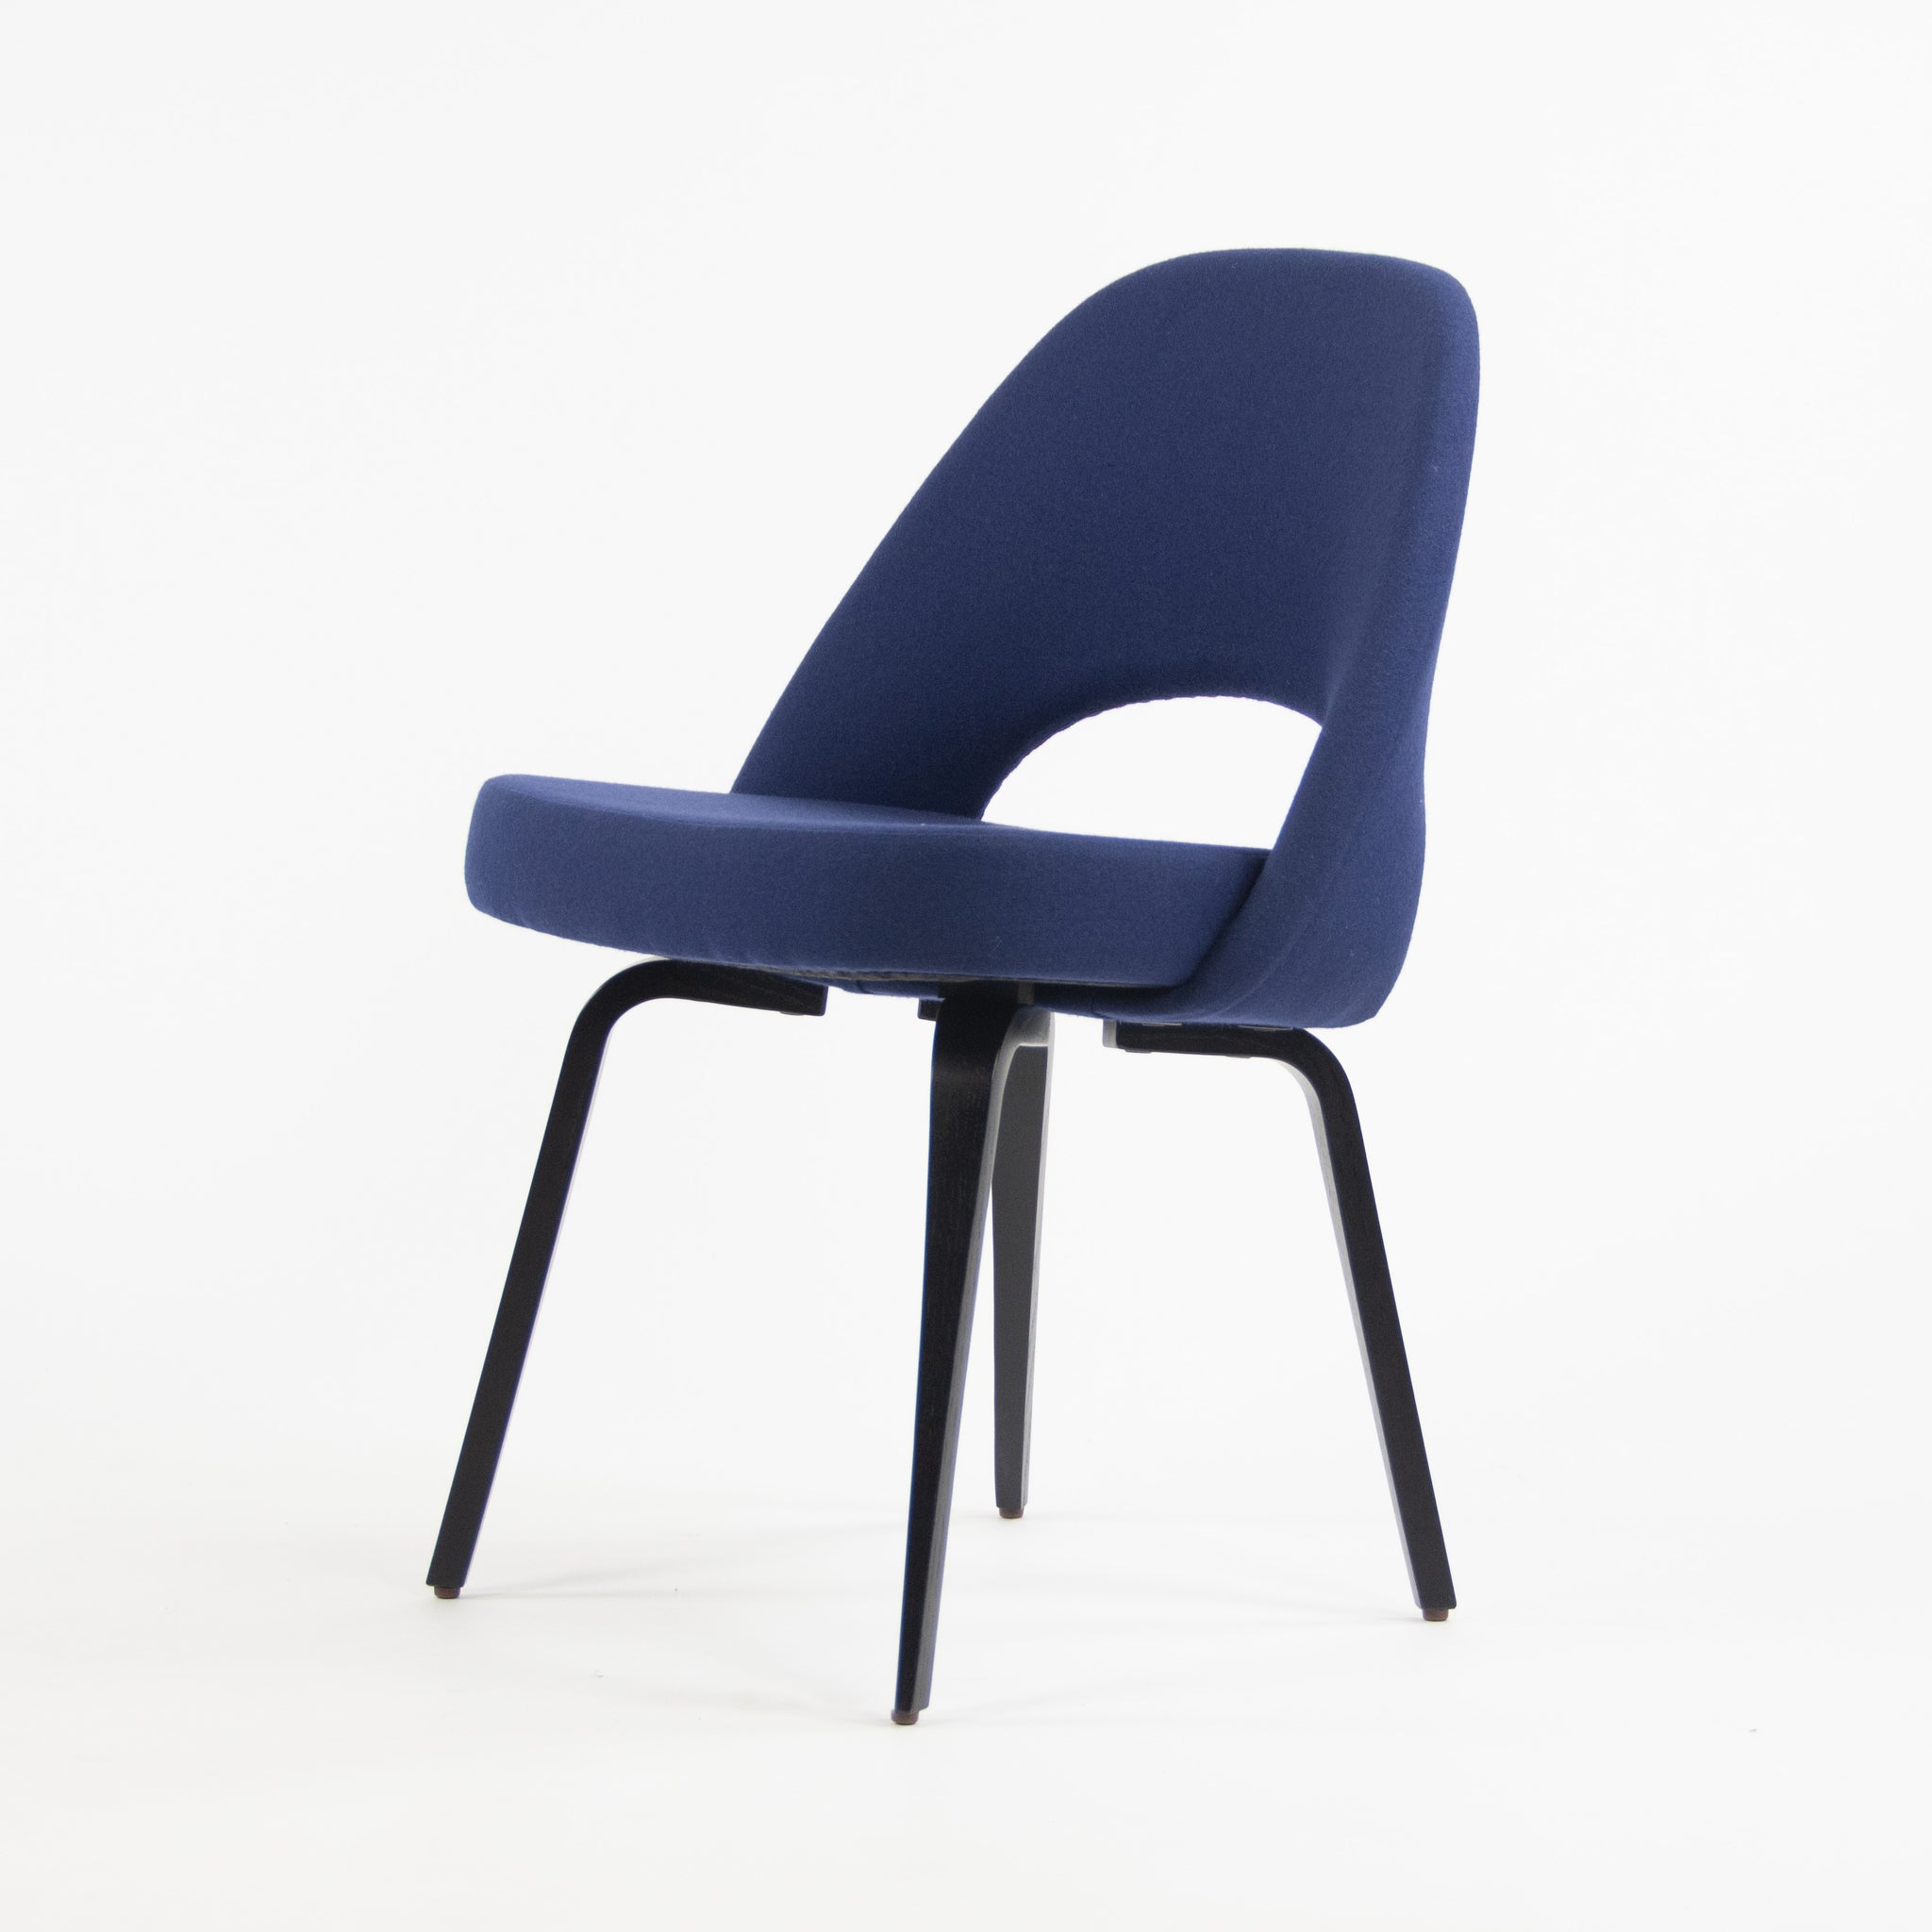 SOLD Knoll Studio 2019 Eero Saarinen Executive Armless Chair Dark Blue Fabric Wood